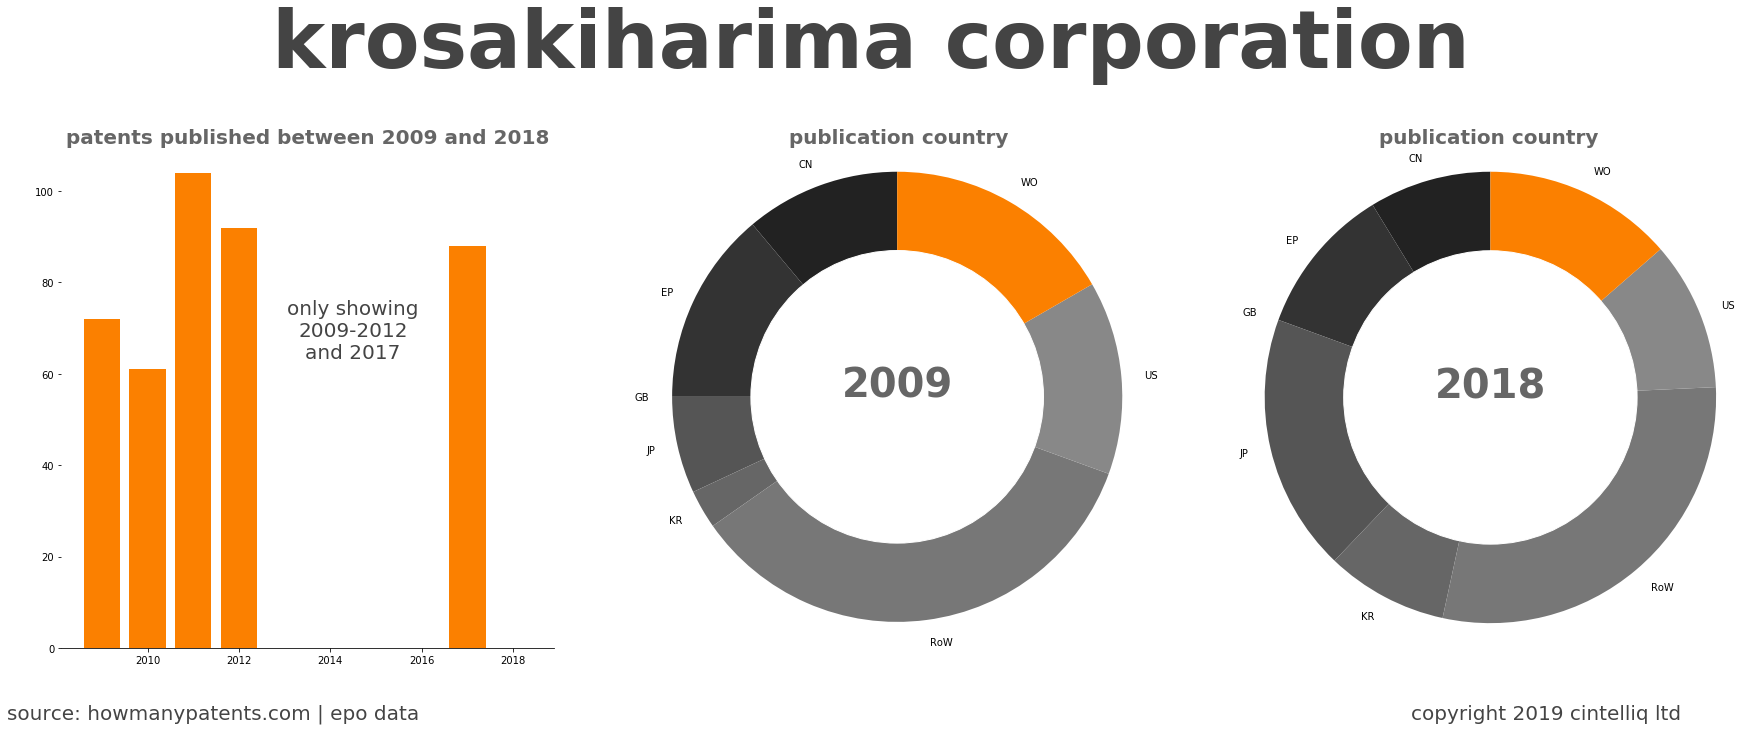 summary of patents for Krosakiharima Corporation